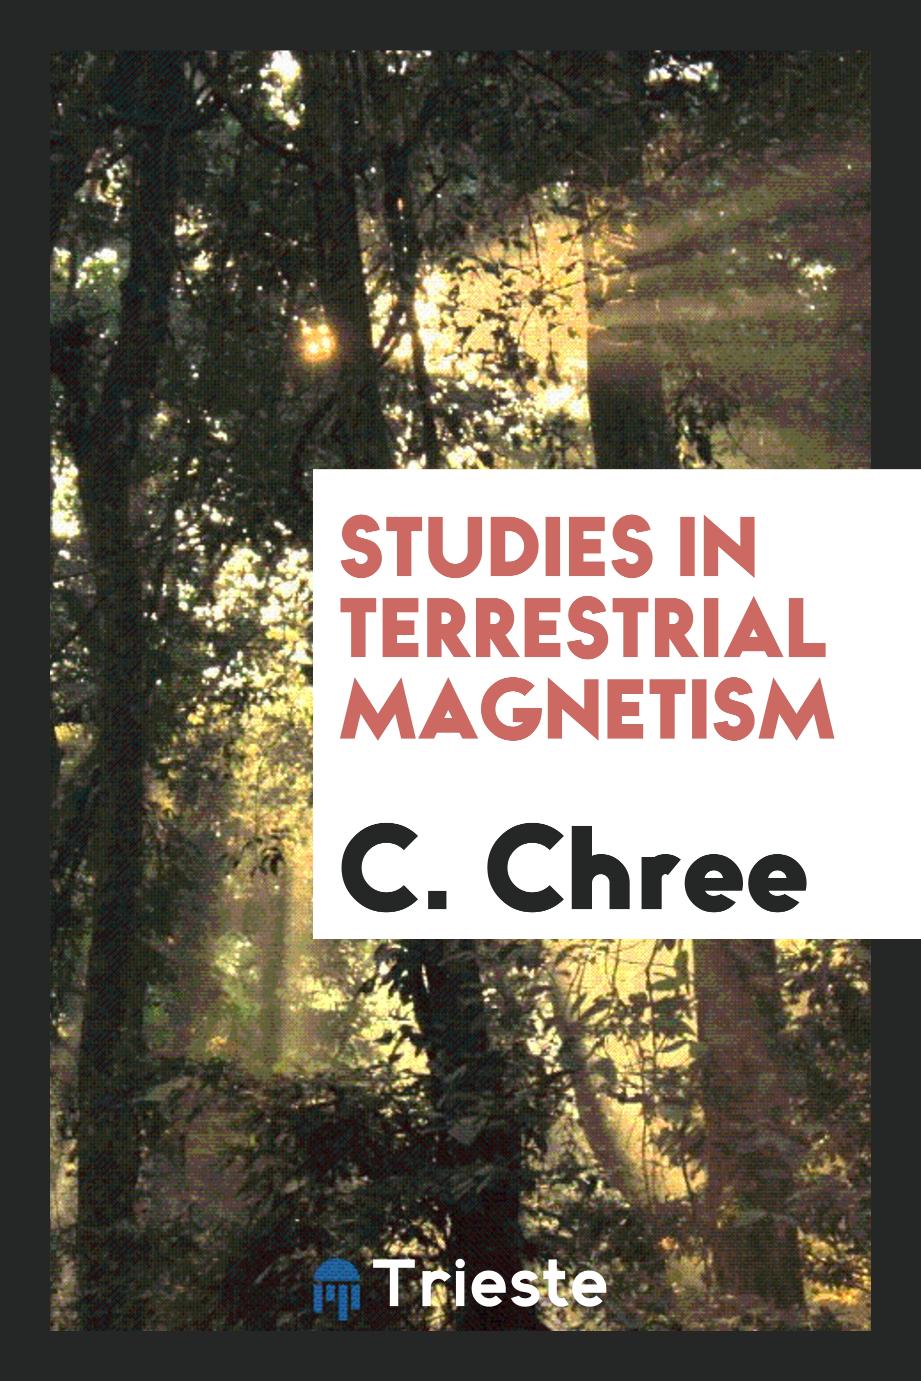 Studies in terrestrial magnetism